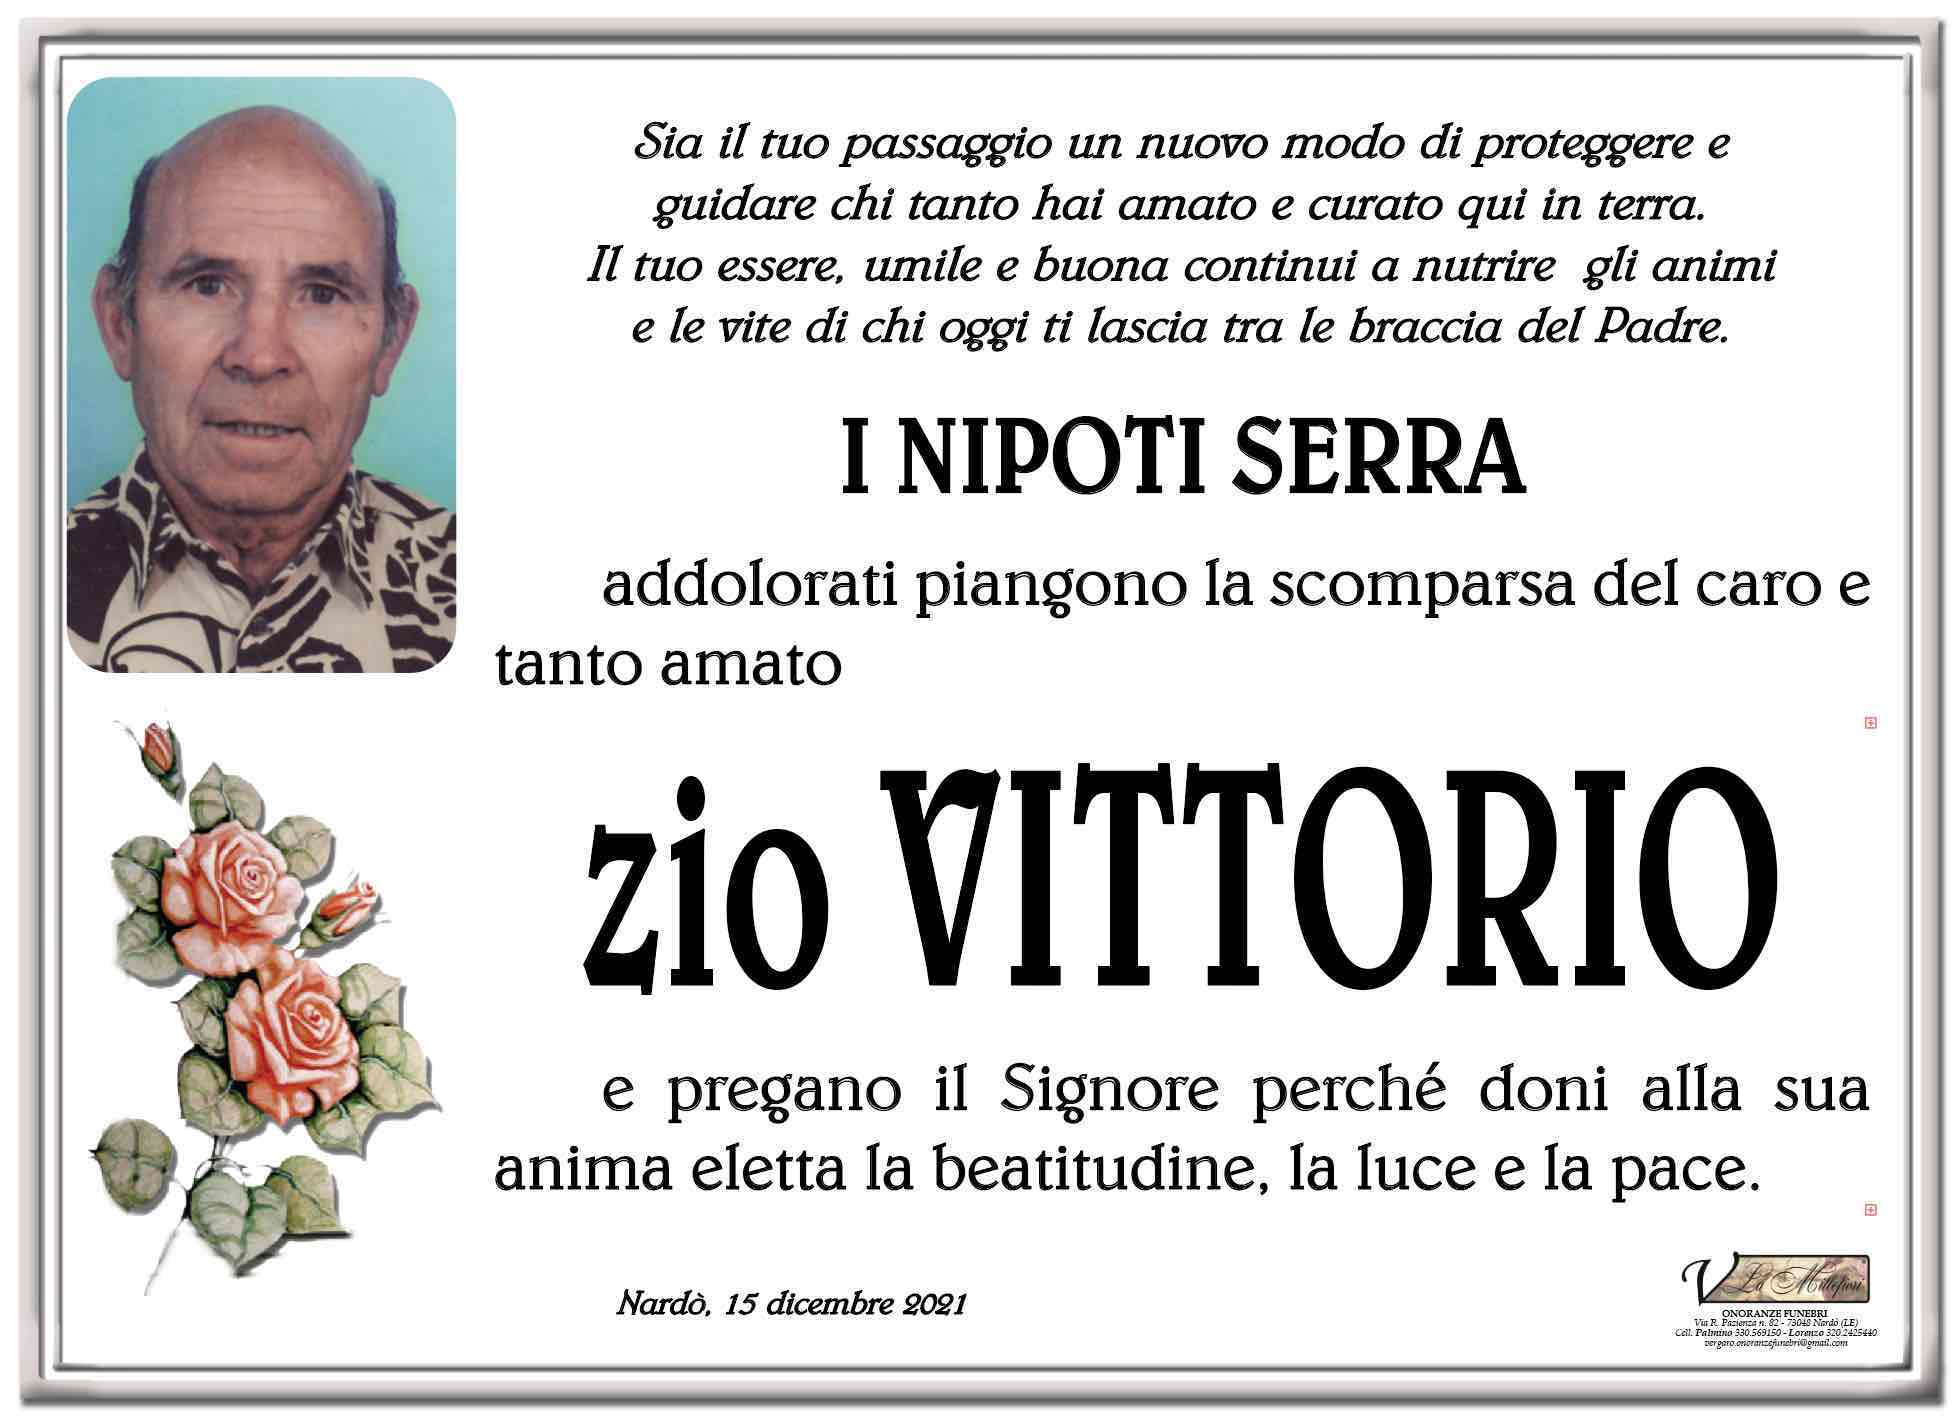 Vittorio Serra